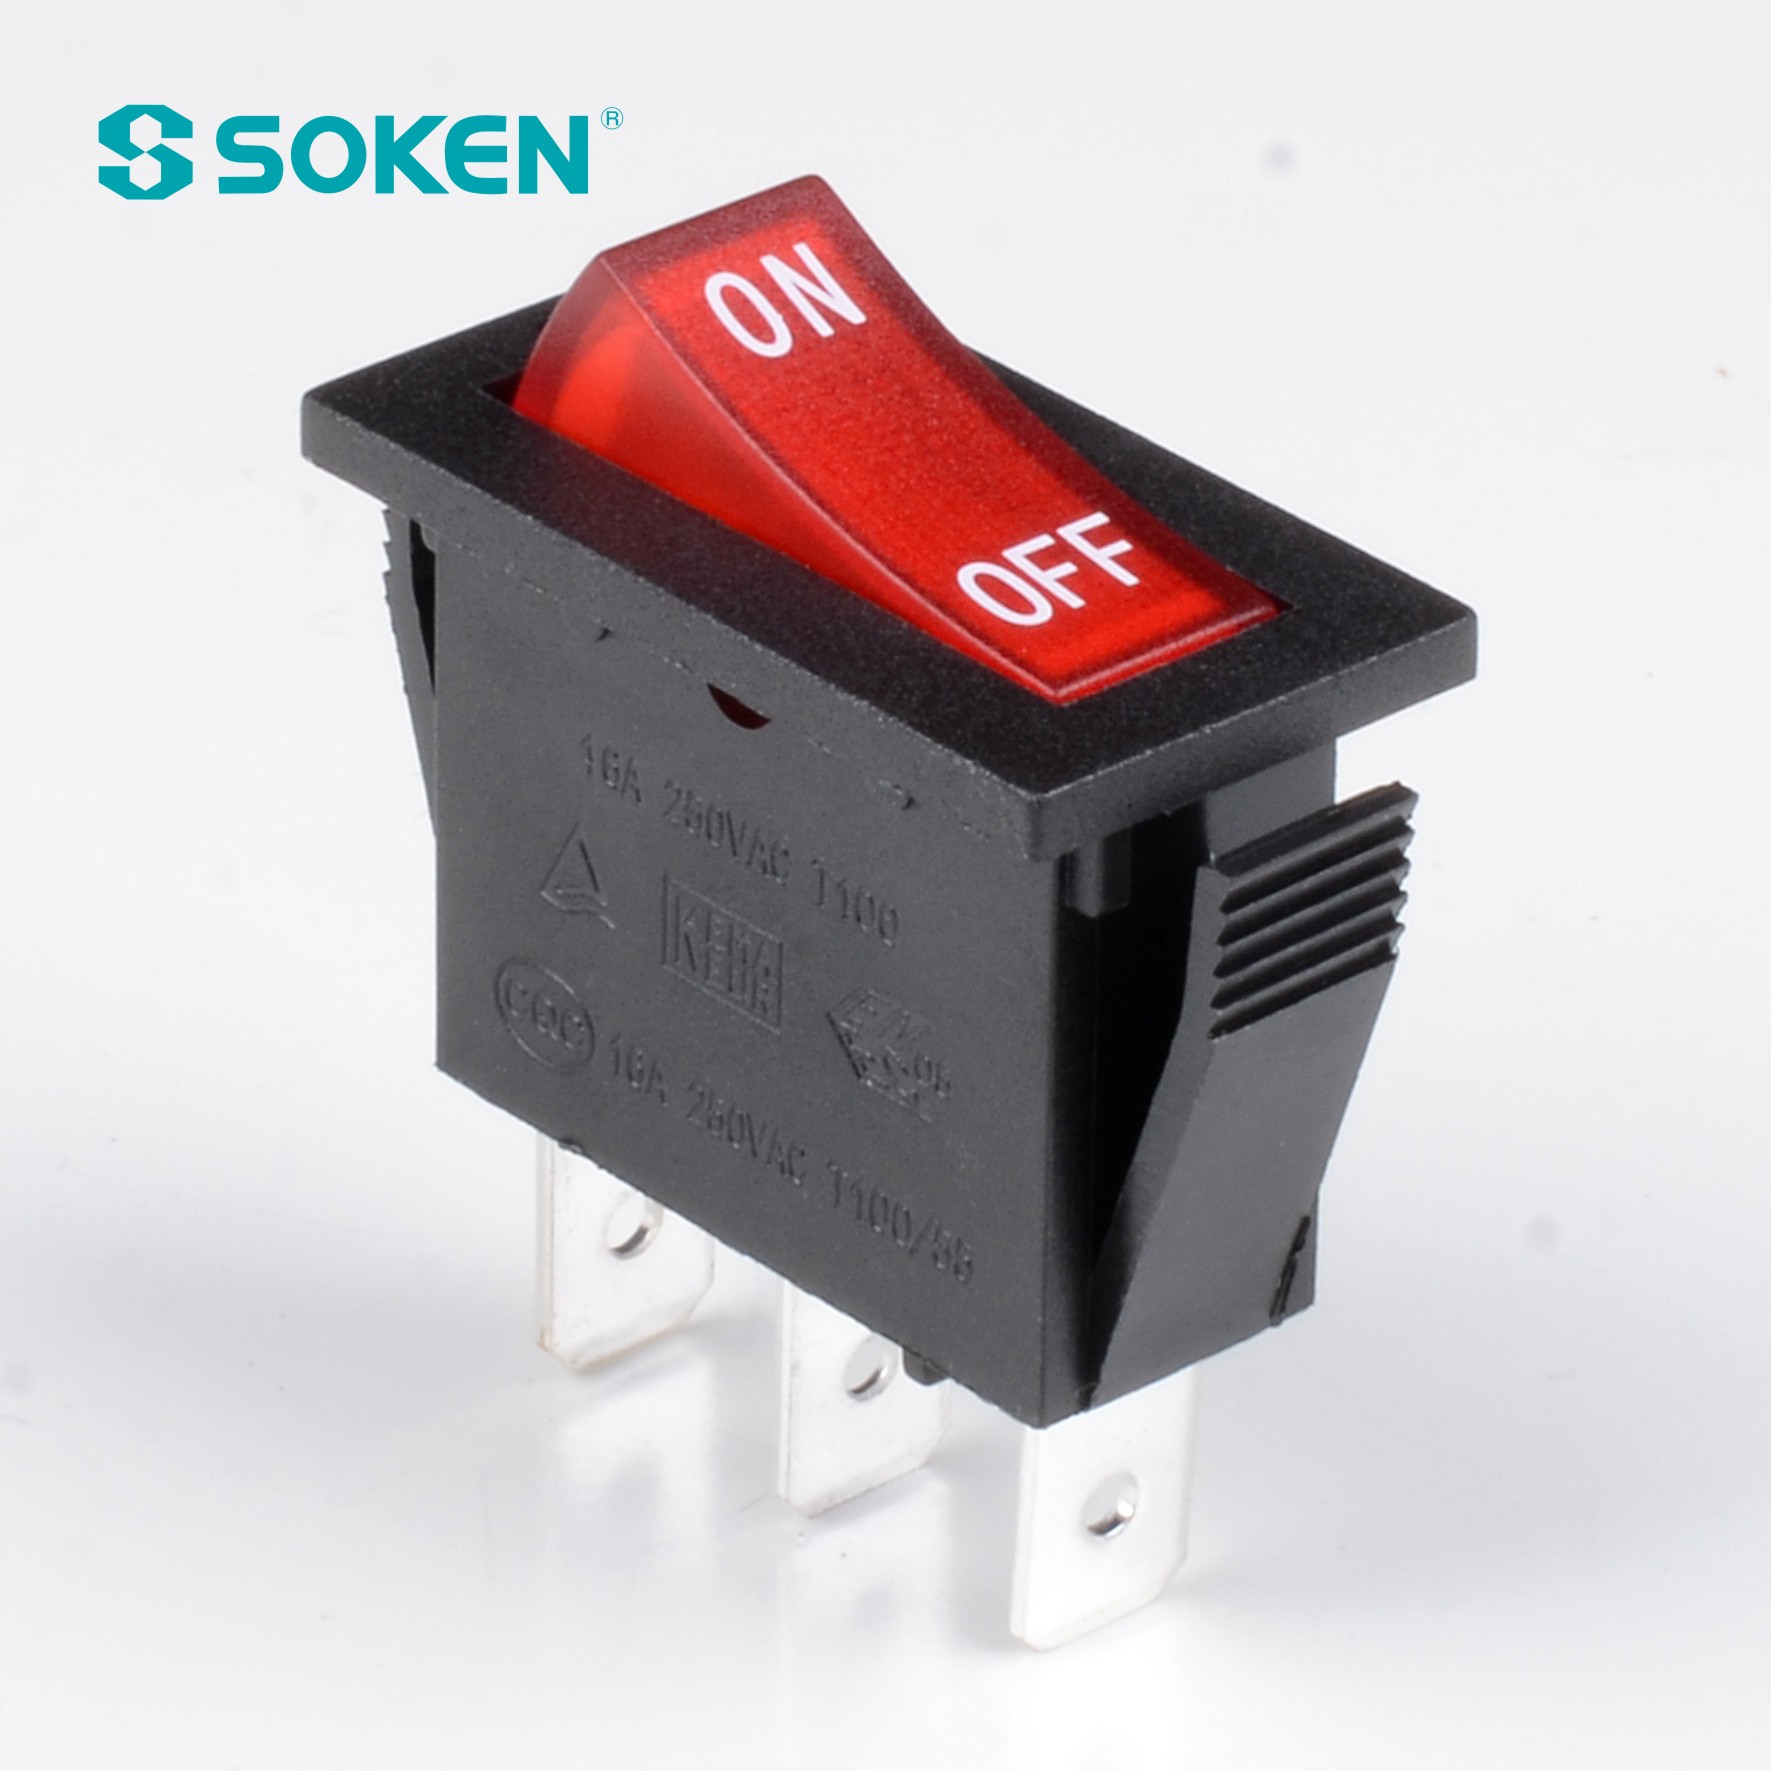 Soken Rk1-16 1X1n W/R on off Rocker Switch